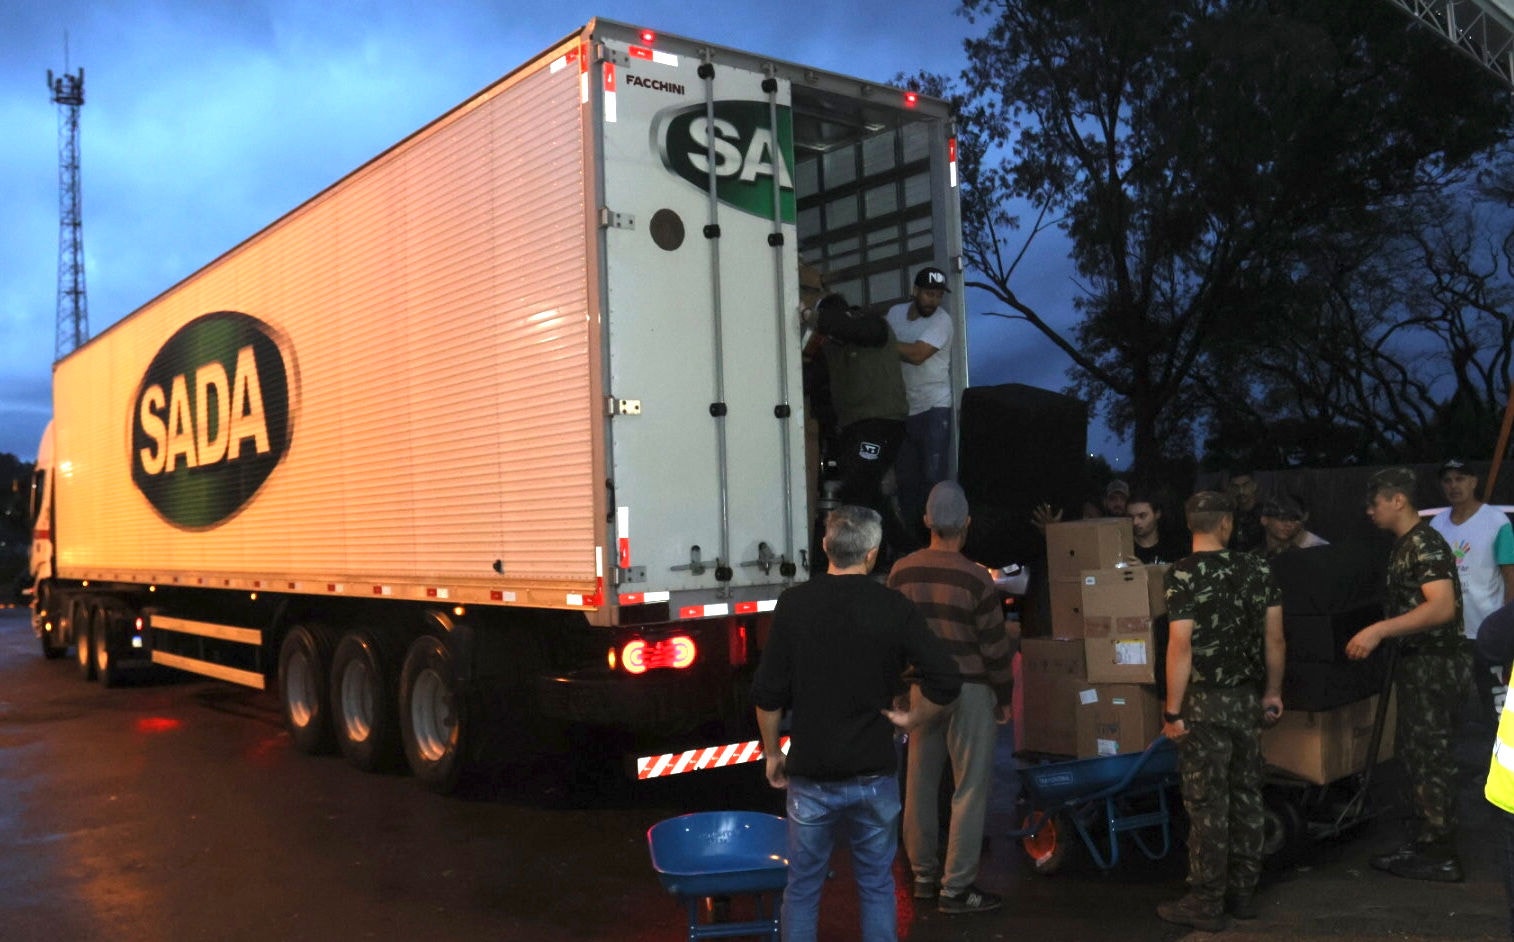 Os voluntários se revezaram para retirar tudo do baú do caminhão e levar para dentro do centro de distribuição. FOTO: Rodney Costa / O TEMPO